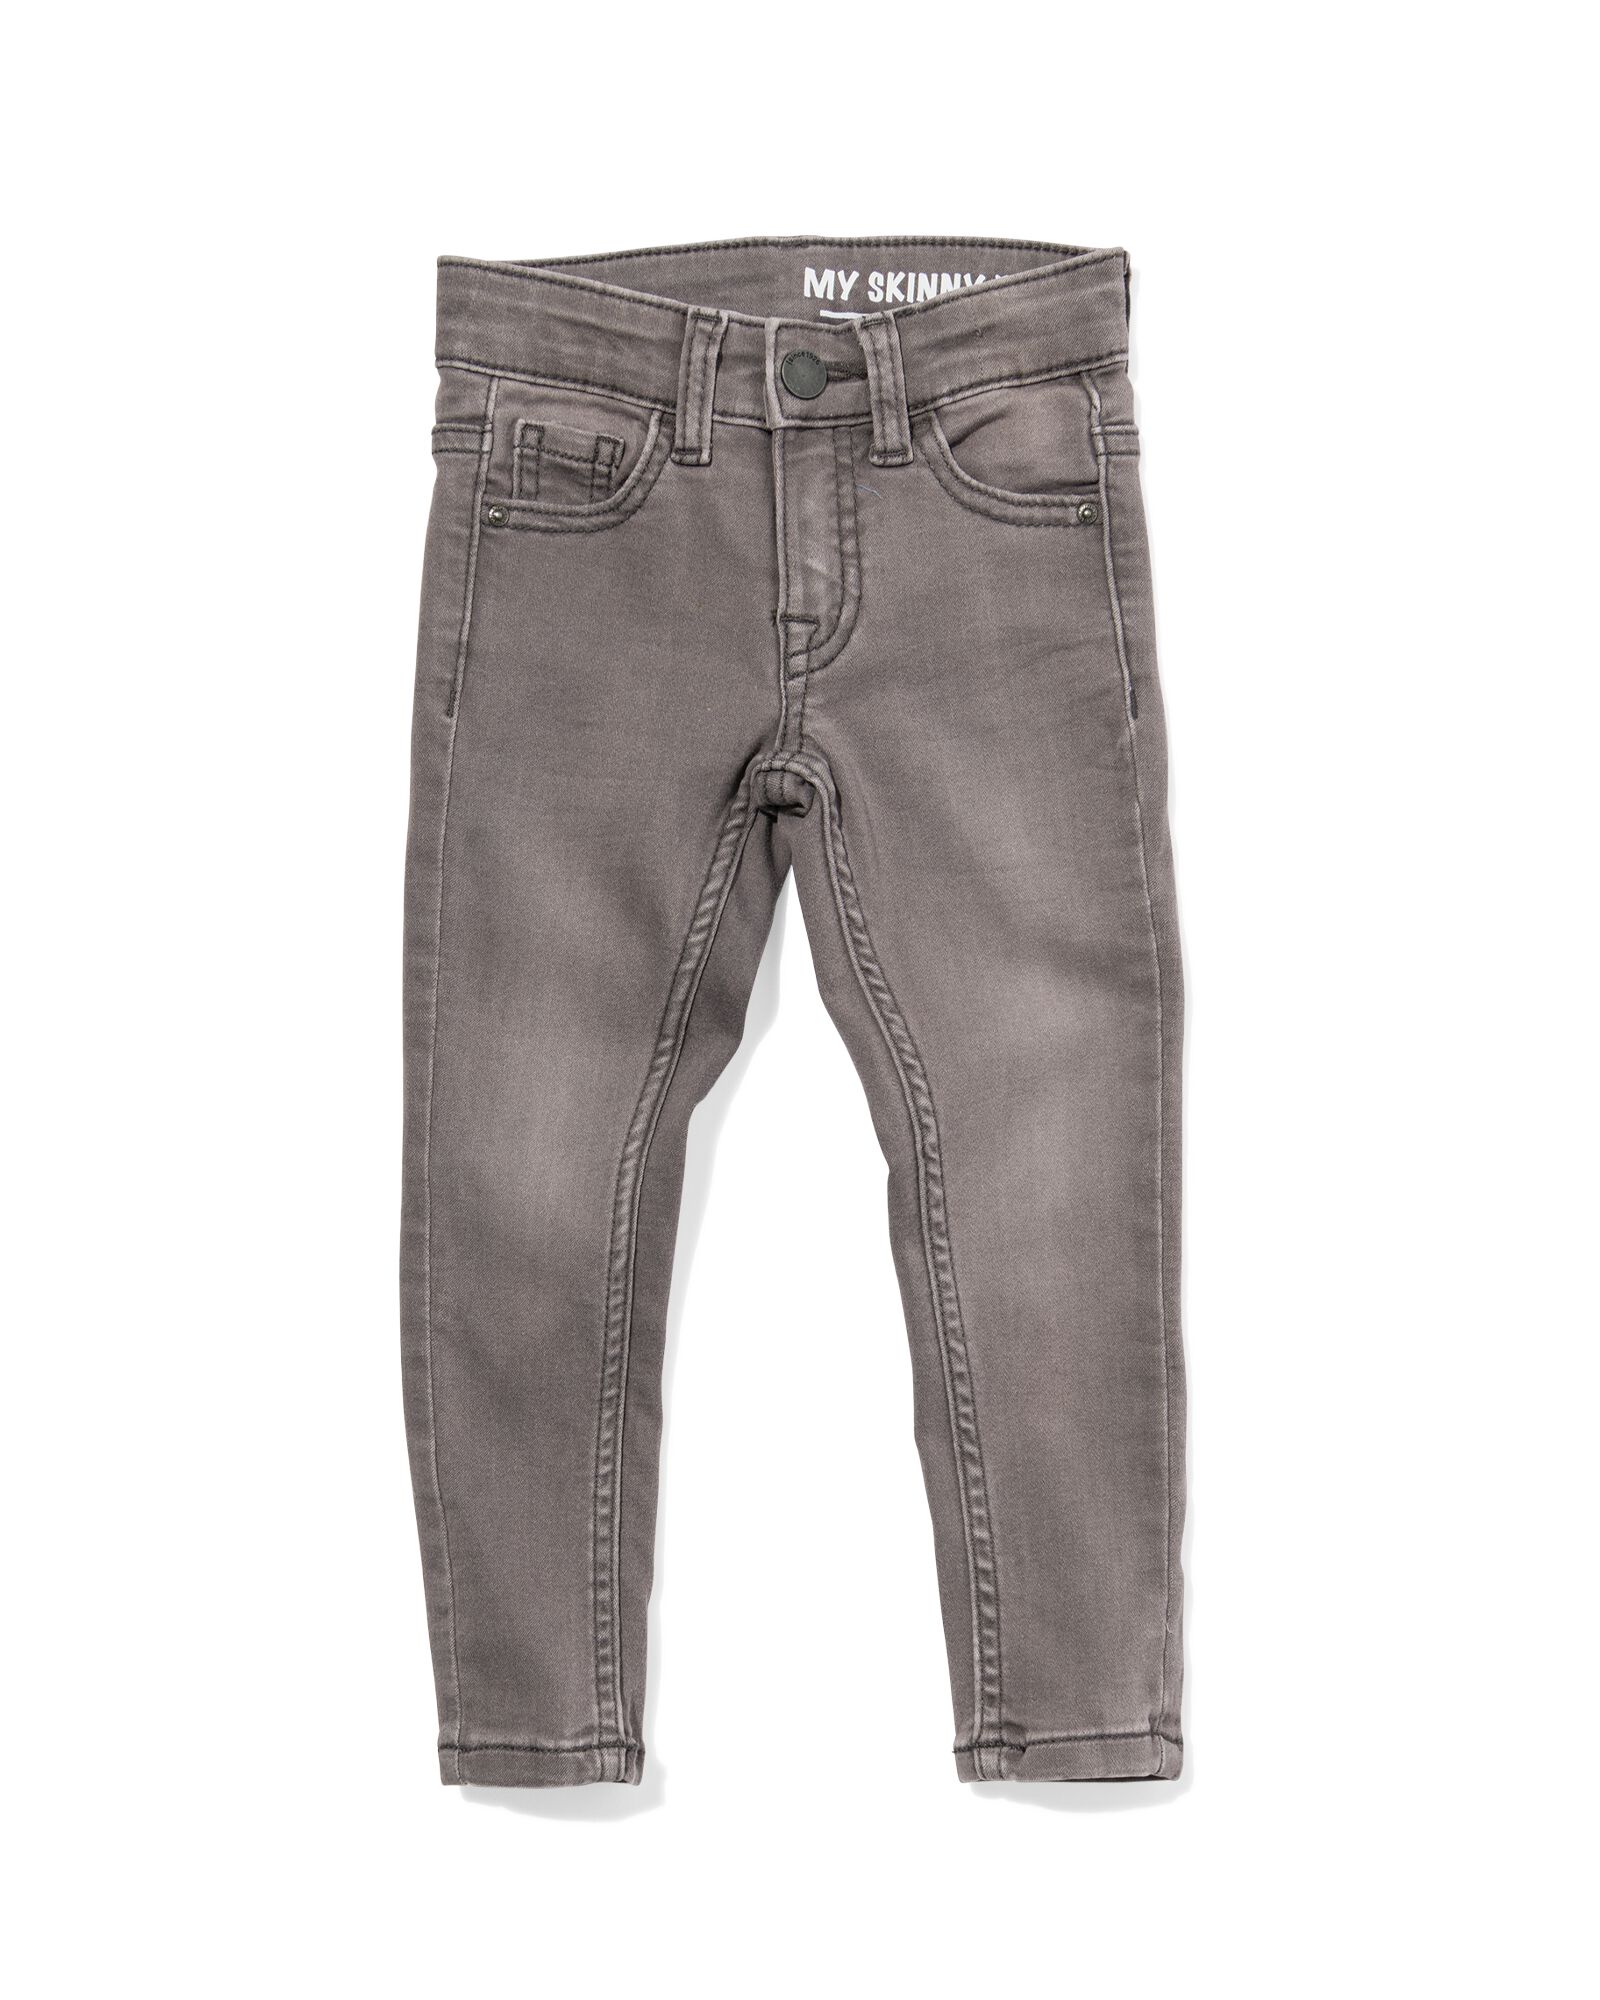 kinder jeans skinny fit grijs 116 - 30874875 - HEMA